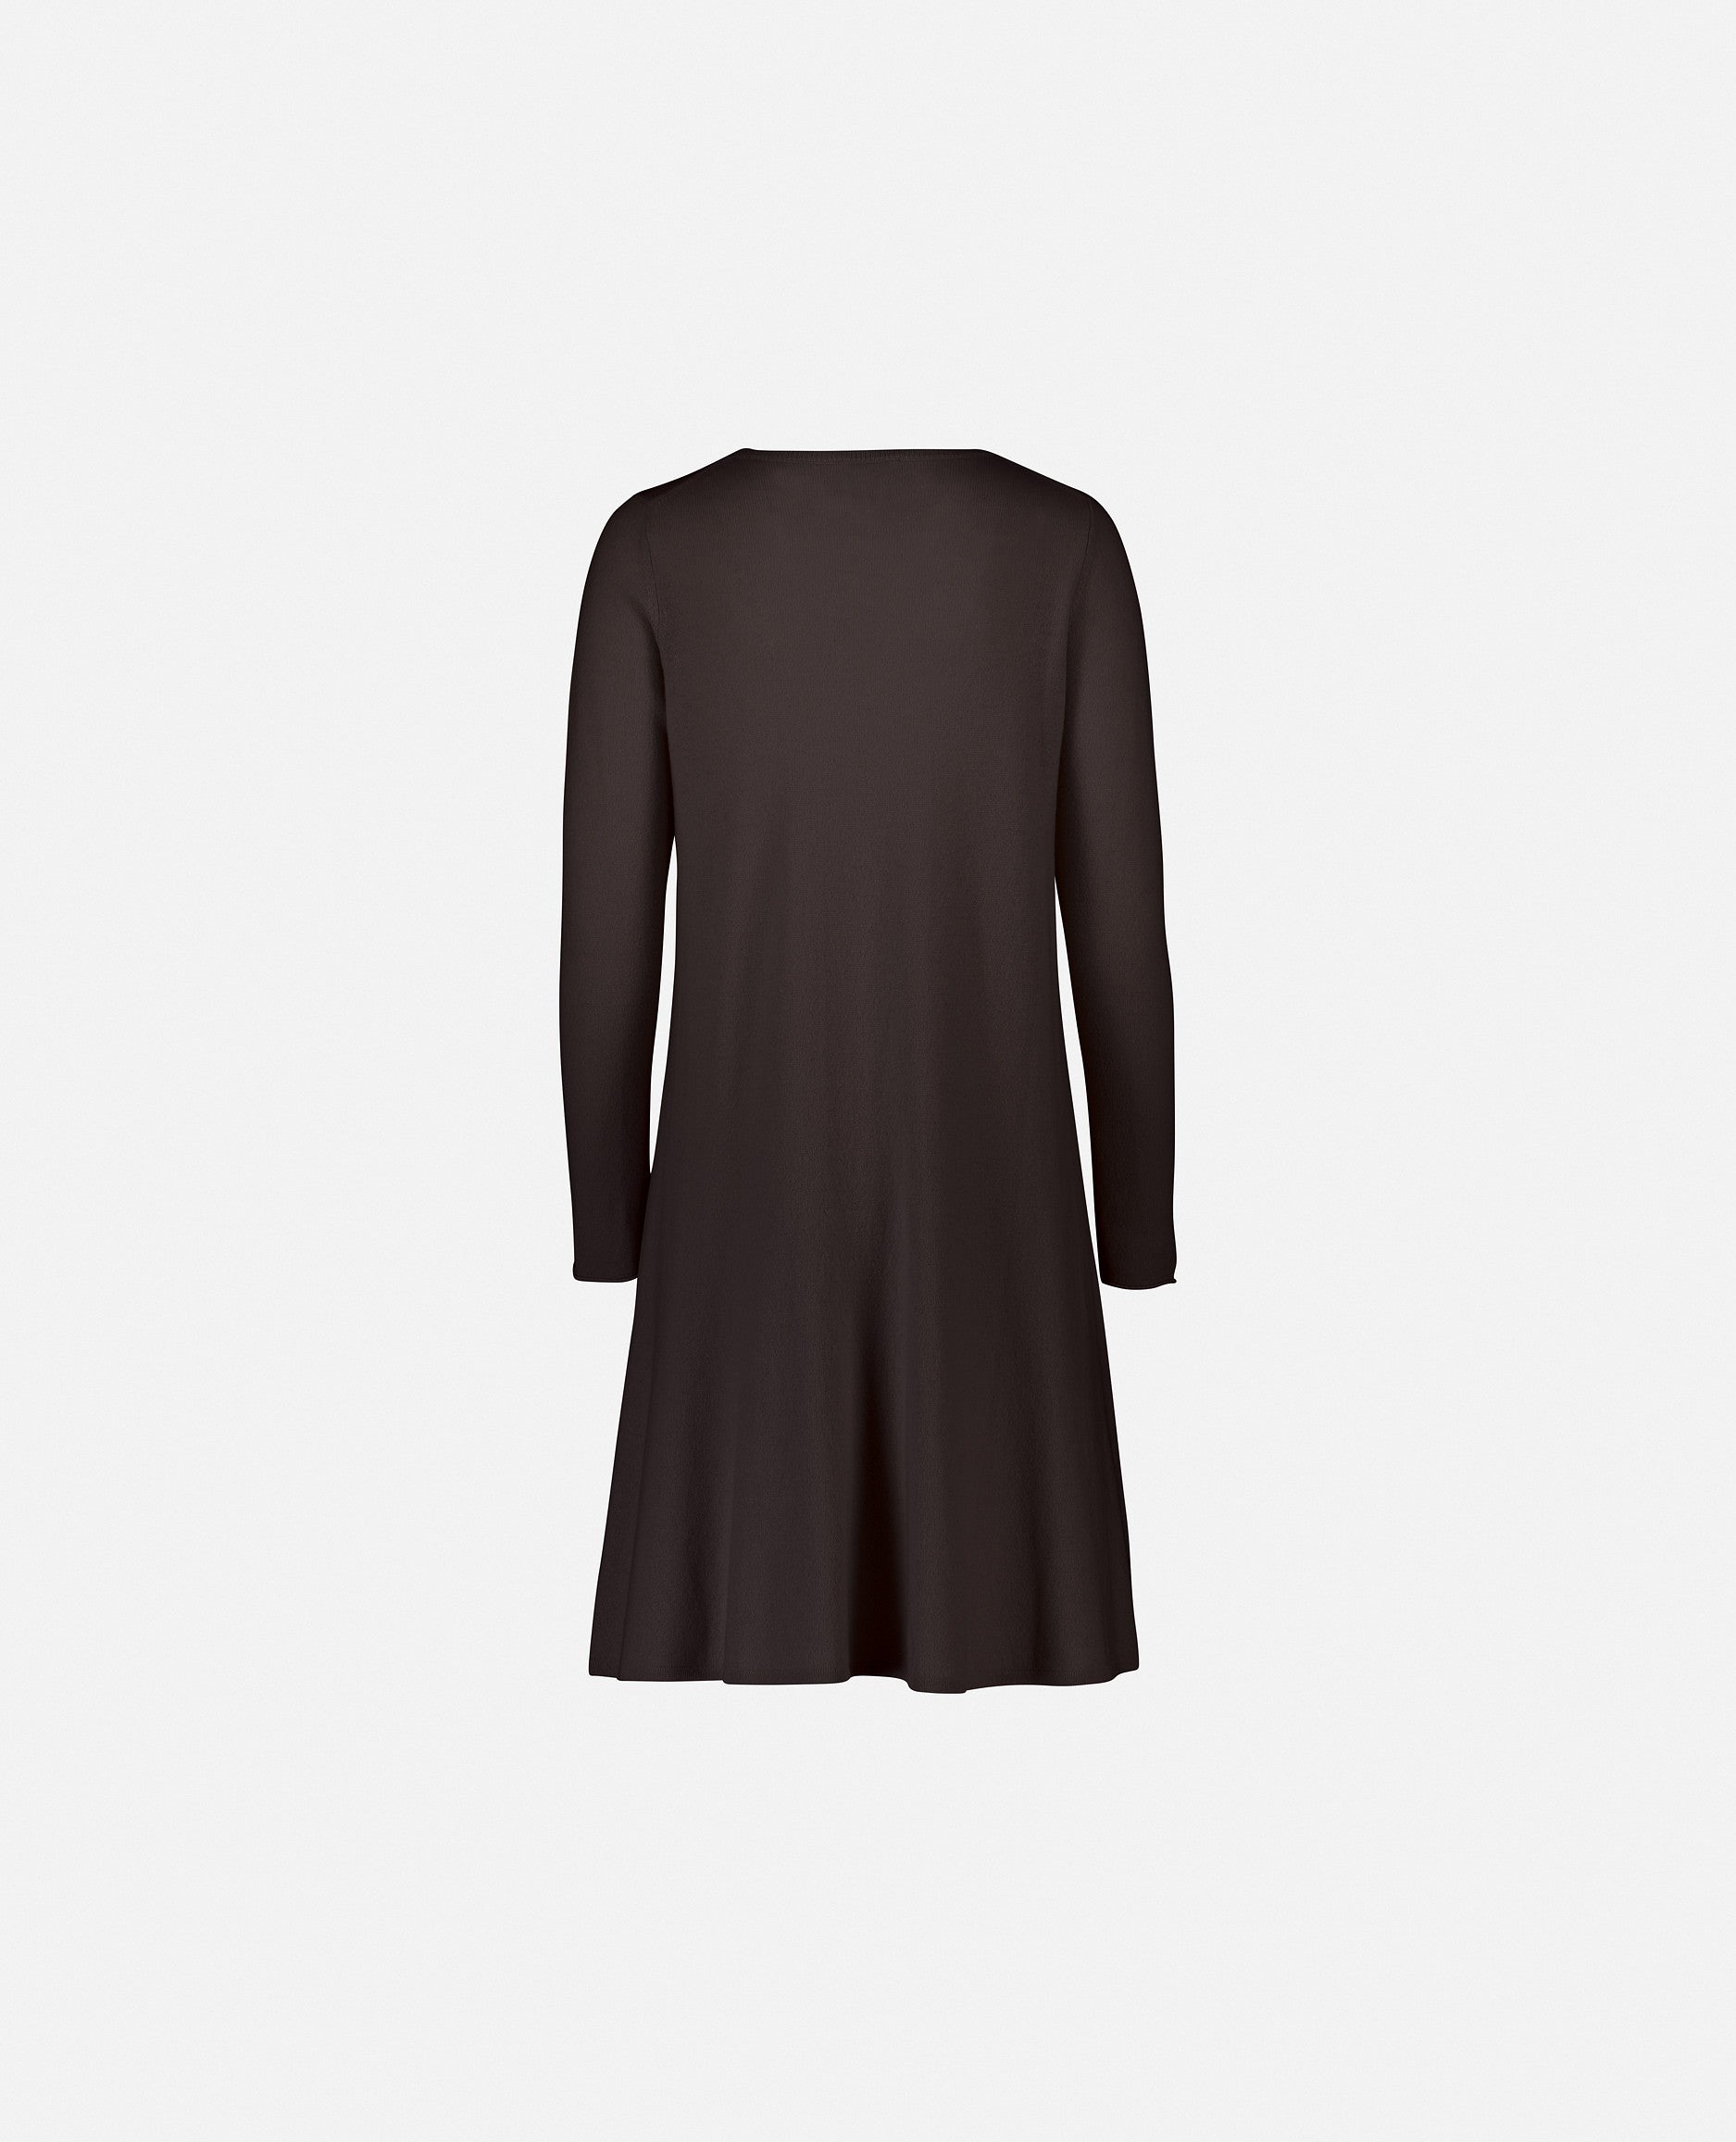 235-17664-49-S_2 - Allude - A-Form Braun Damen Feinstrick Kleid Kleider Langarm Rundhalsausschnitt SAPG::235-17664 Wolle